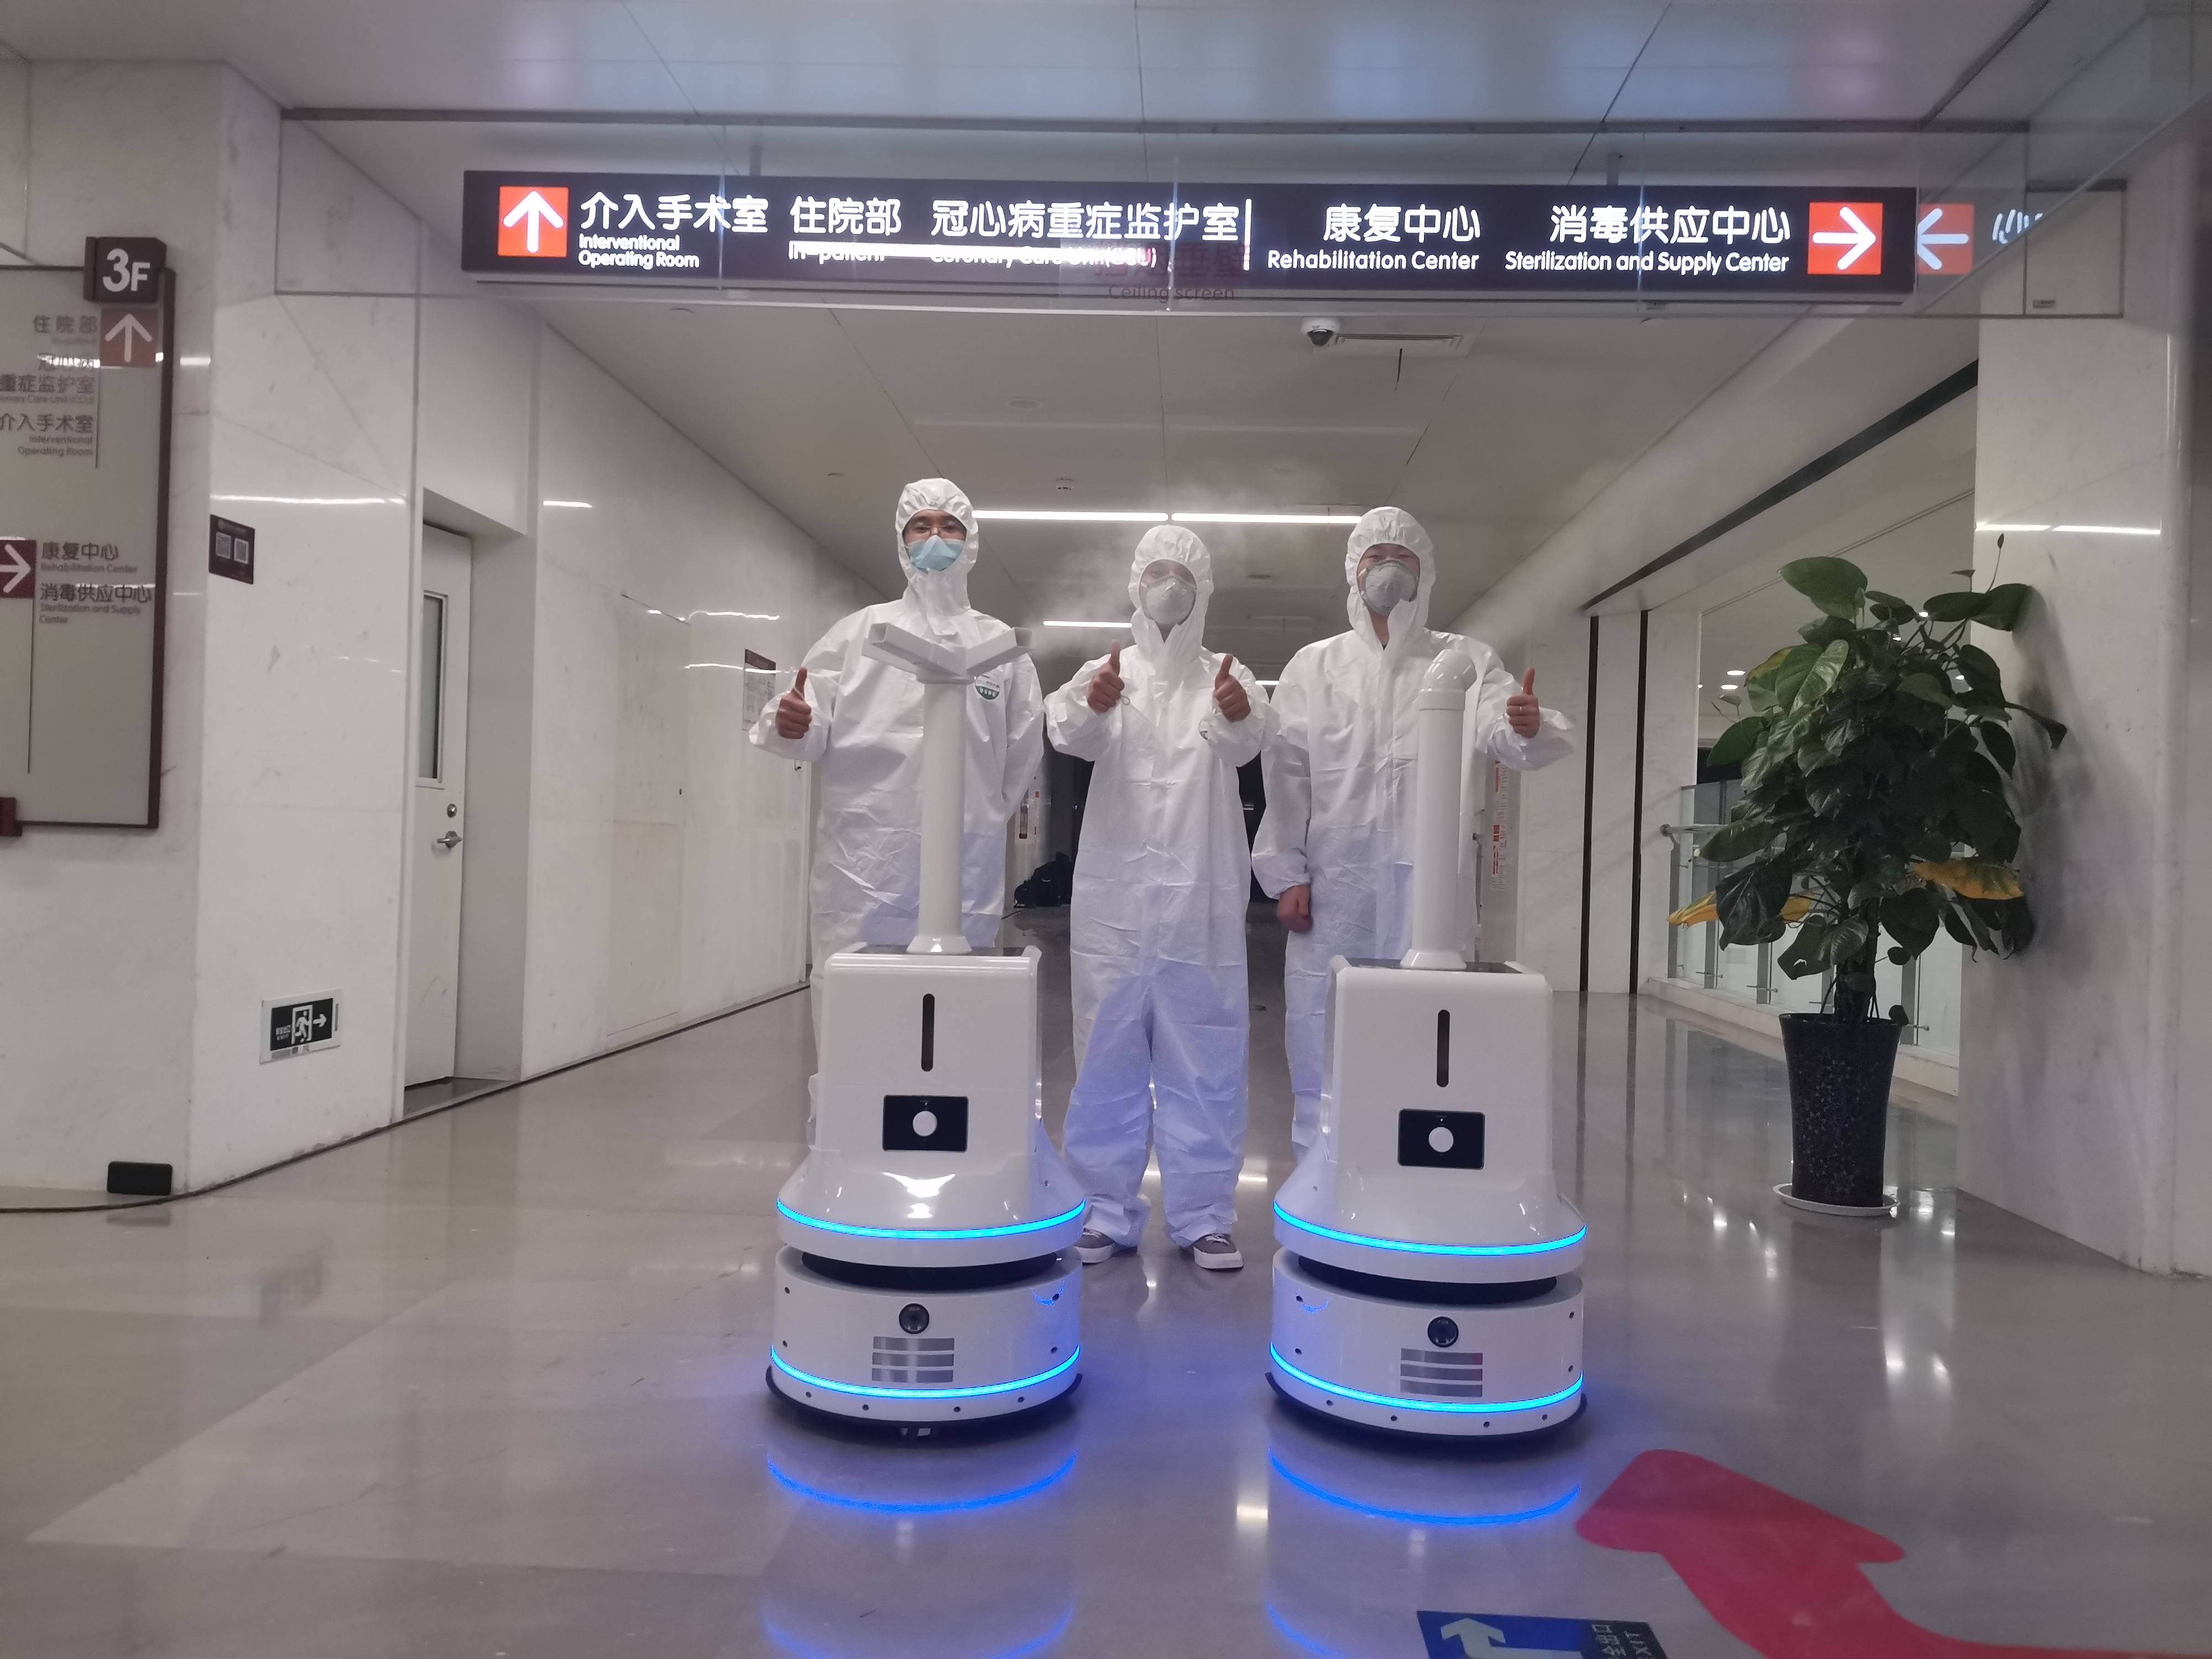 分队部署机器人消毒7月22日开始对接河南省人民医院捐赠消毒服务事项